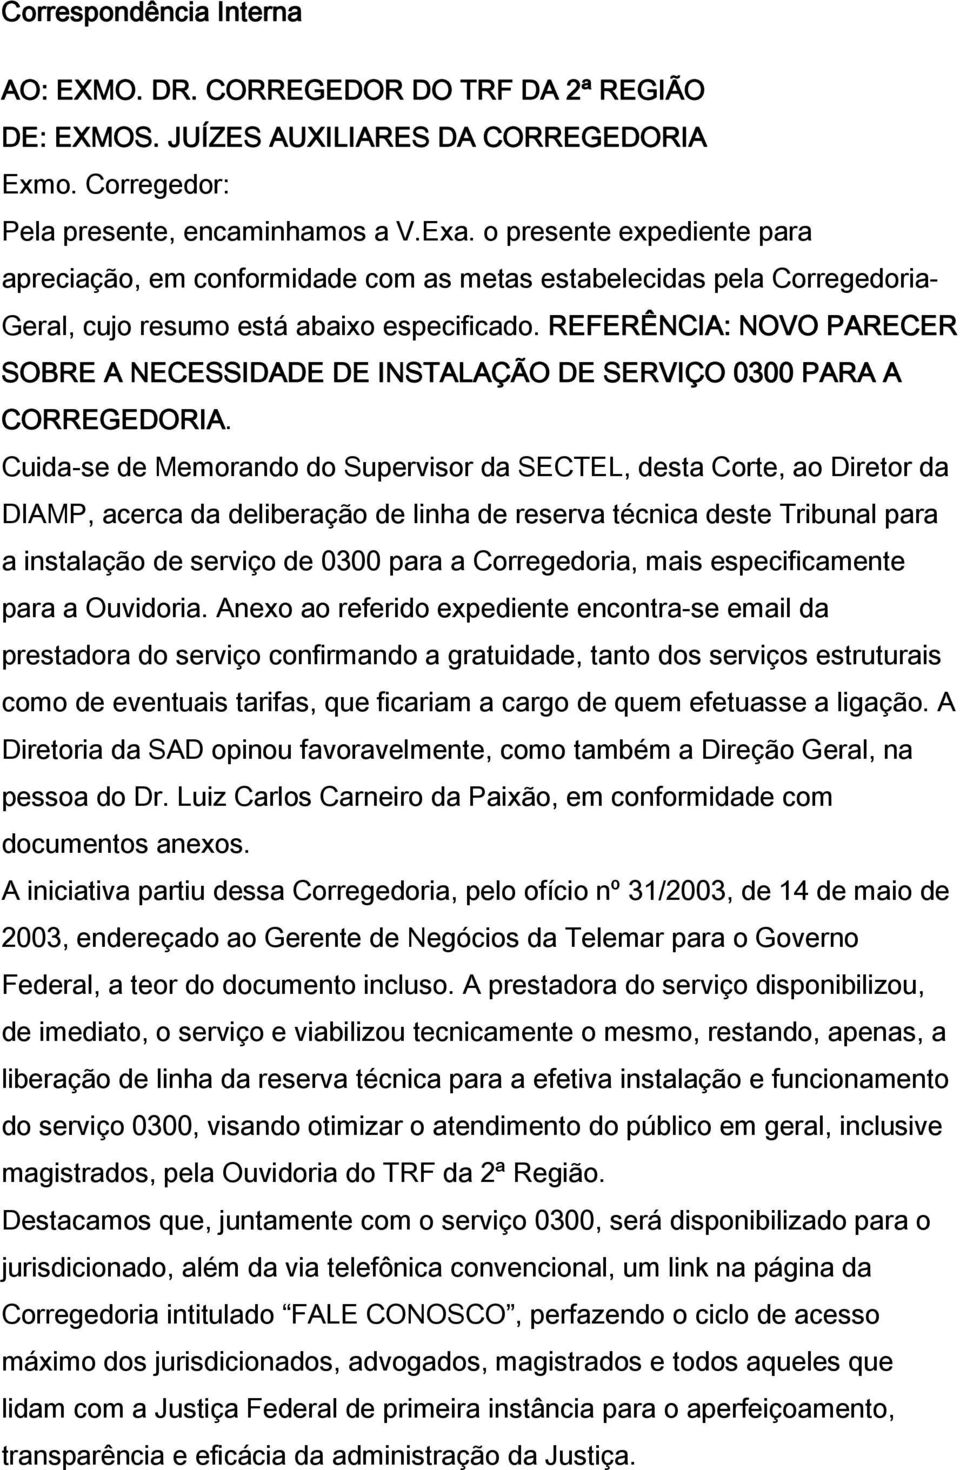 REFERÊNCIA: NOVO PARECER SOBRE A NECESSIDADE DE INSTALAÇÃO DE SERVIÇO 0300 PARA A CORREGEDORIA.